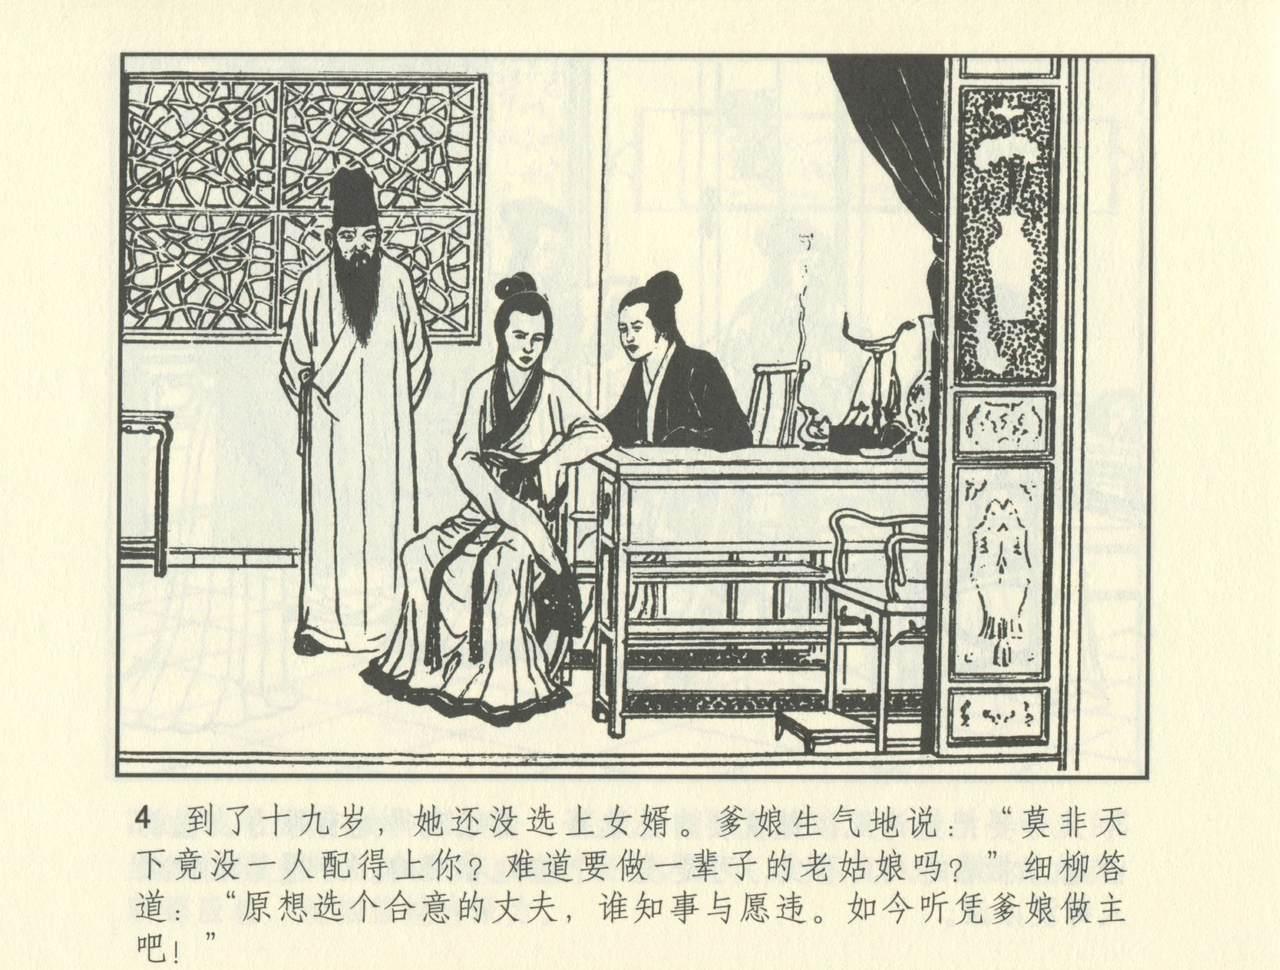 聊斋志异 张玮等绘 天津人民美术出版社 卷二十一 ~ 三十 476